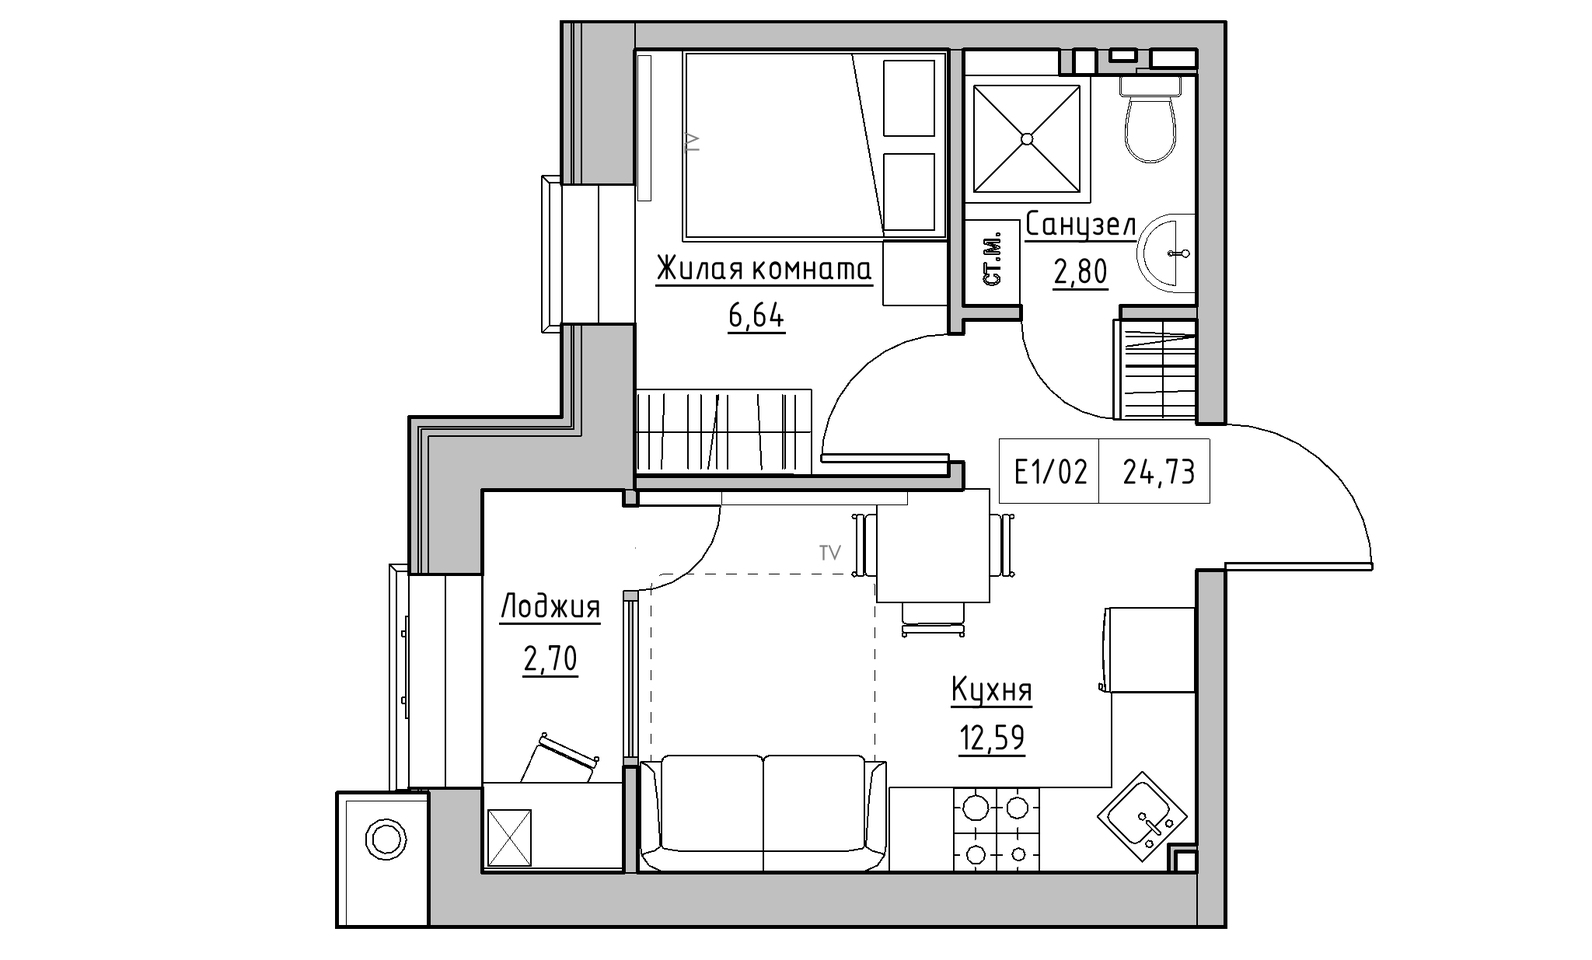 Планировка 1-к квартира площей 24.73м2, KS-014-04/0013.